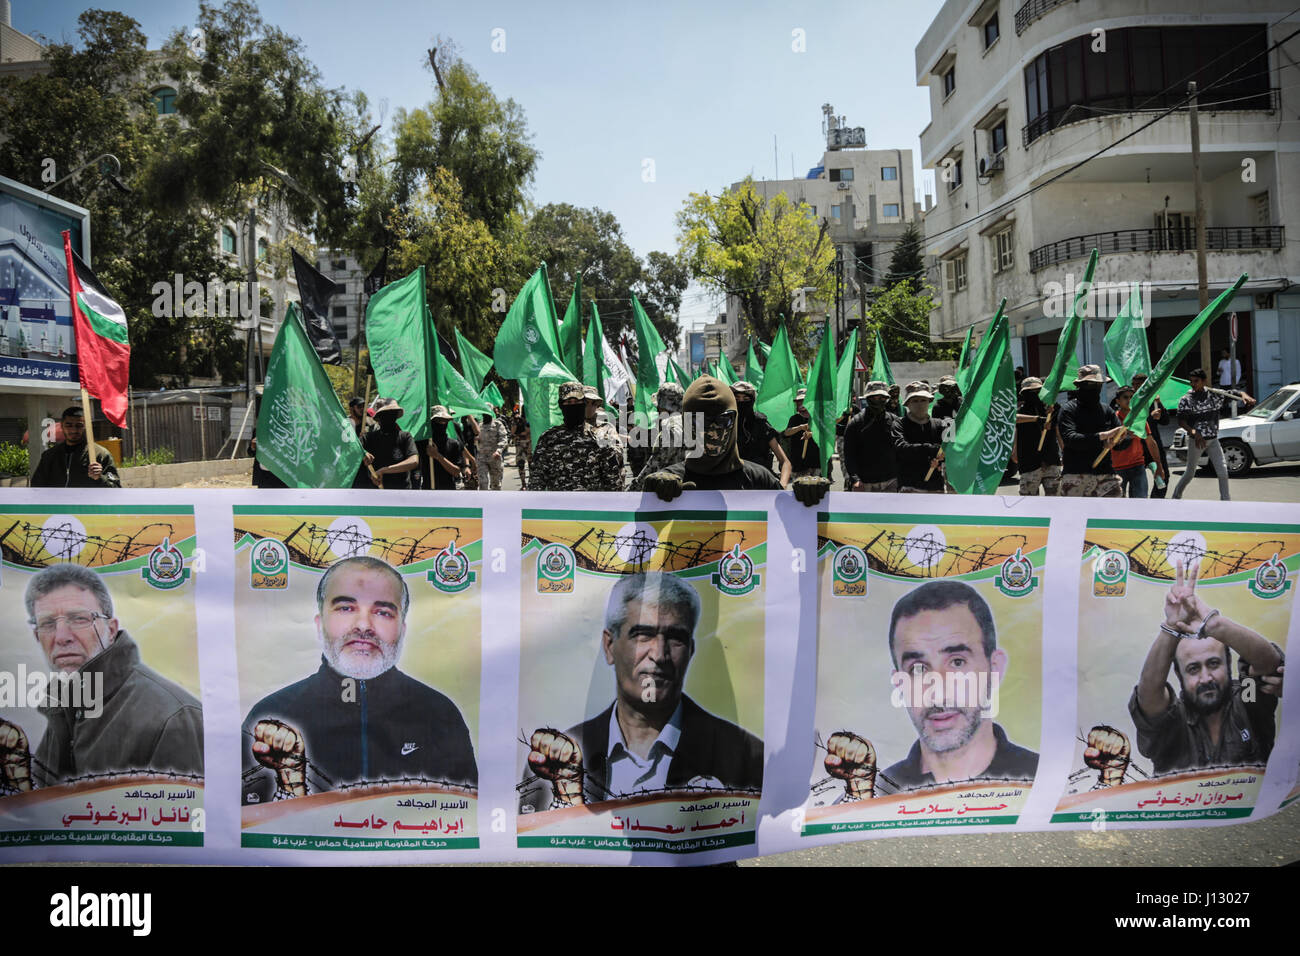 Demonstranten nehmen an einer Kundgebung zur Unterstützung der palästinensischen Häftlinge im Hungerstreik in israelischen Gefängnissen Kennzeichnung Tag des palästinensischen Gefangenen, in Gaza-Stadt 17. April 2017 Teil. Hunderte von Palästinensern in israelischen Gefängnissen haben einen Hungerstreik nach einem Aufruf von Leader und prominenten Häftling Marwan Barghouti, eine Bewegung, die eine ernste Herausforderung für die israelischen Behörden markieren konnte, wenn nachhaltig. (Foto: Nidal Alwaheidi/Pacific Press) Stockfoto